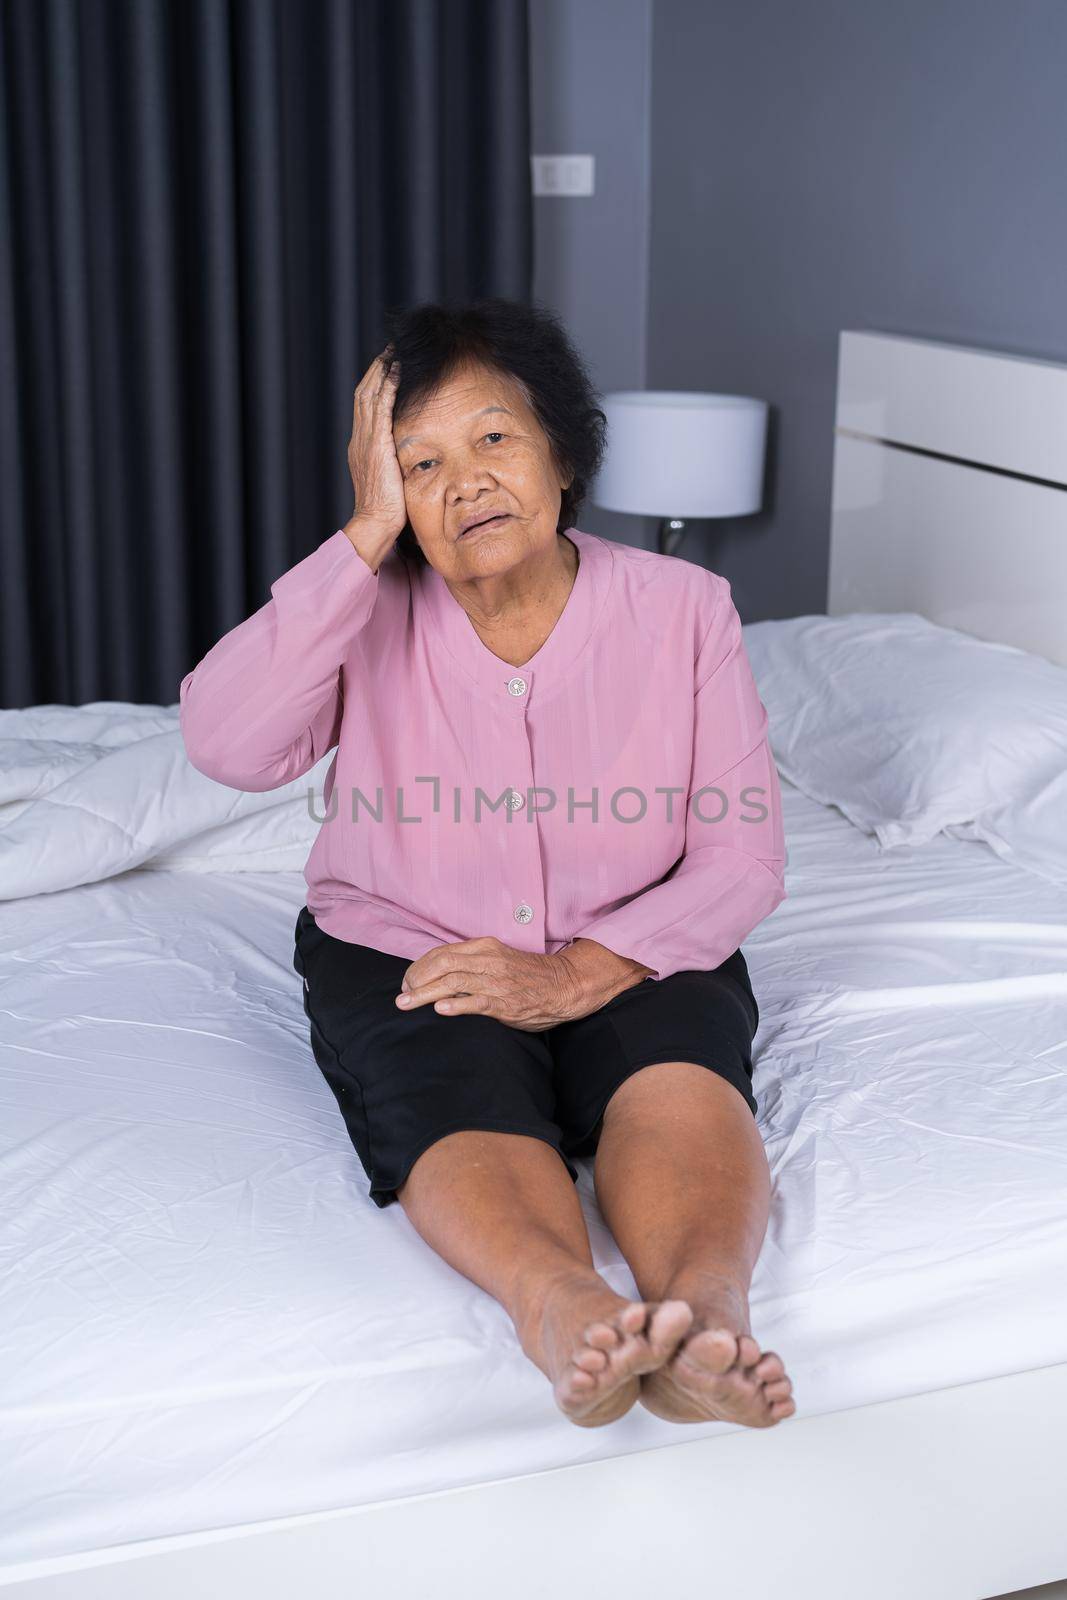 Senior woman got a headache on a bed